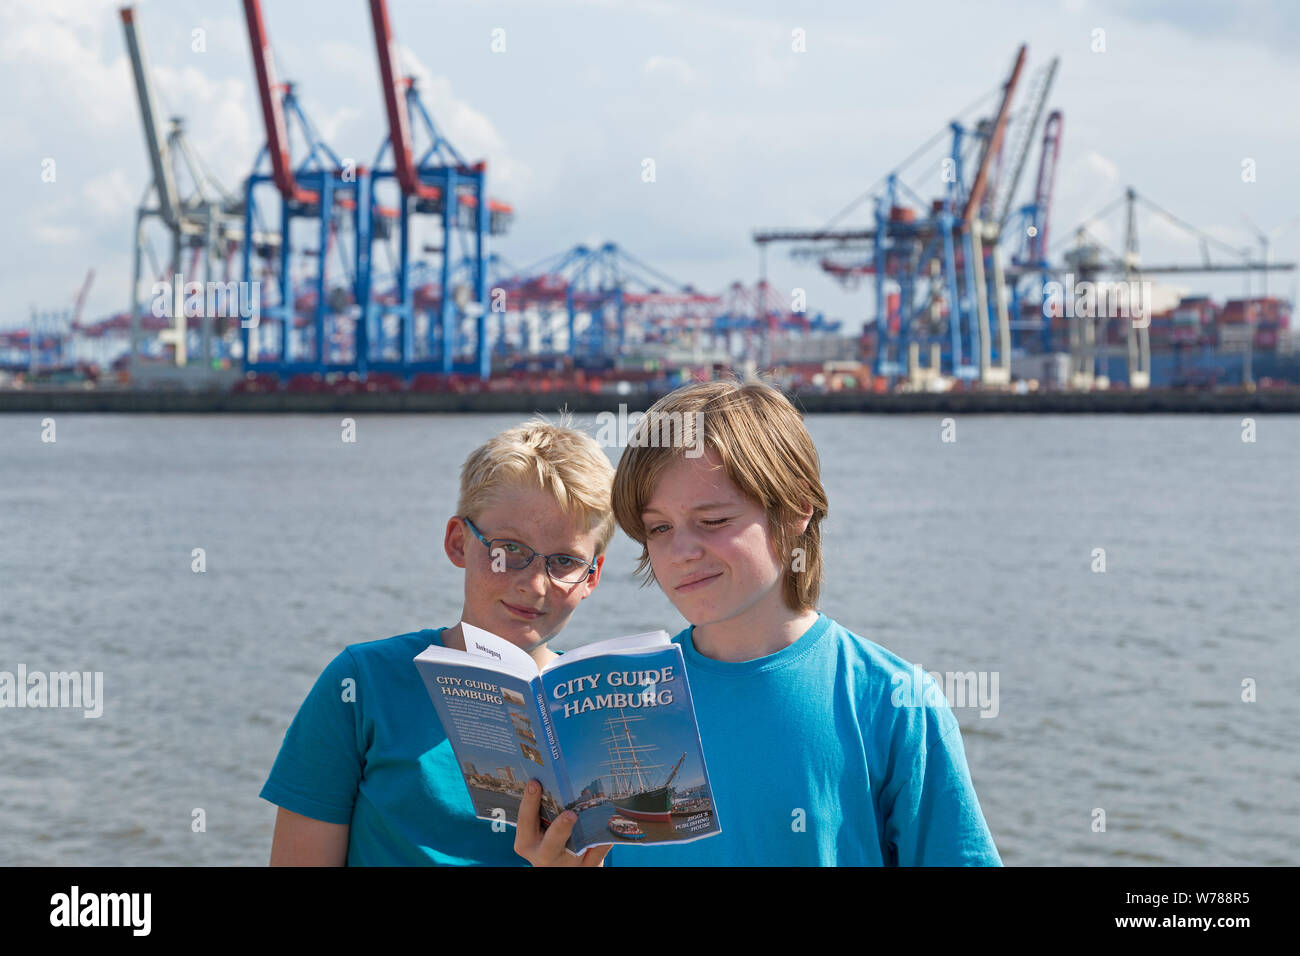 Jugendliche während der Sprache Studium reisen studium ihrer Reiseführer neben Elbe vor Container Terminal Burchard-Kai, Hamburg, Deutschland Stockfoto